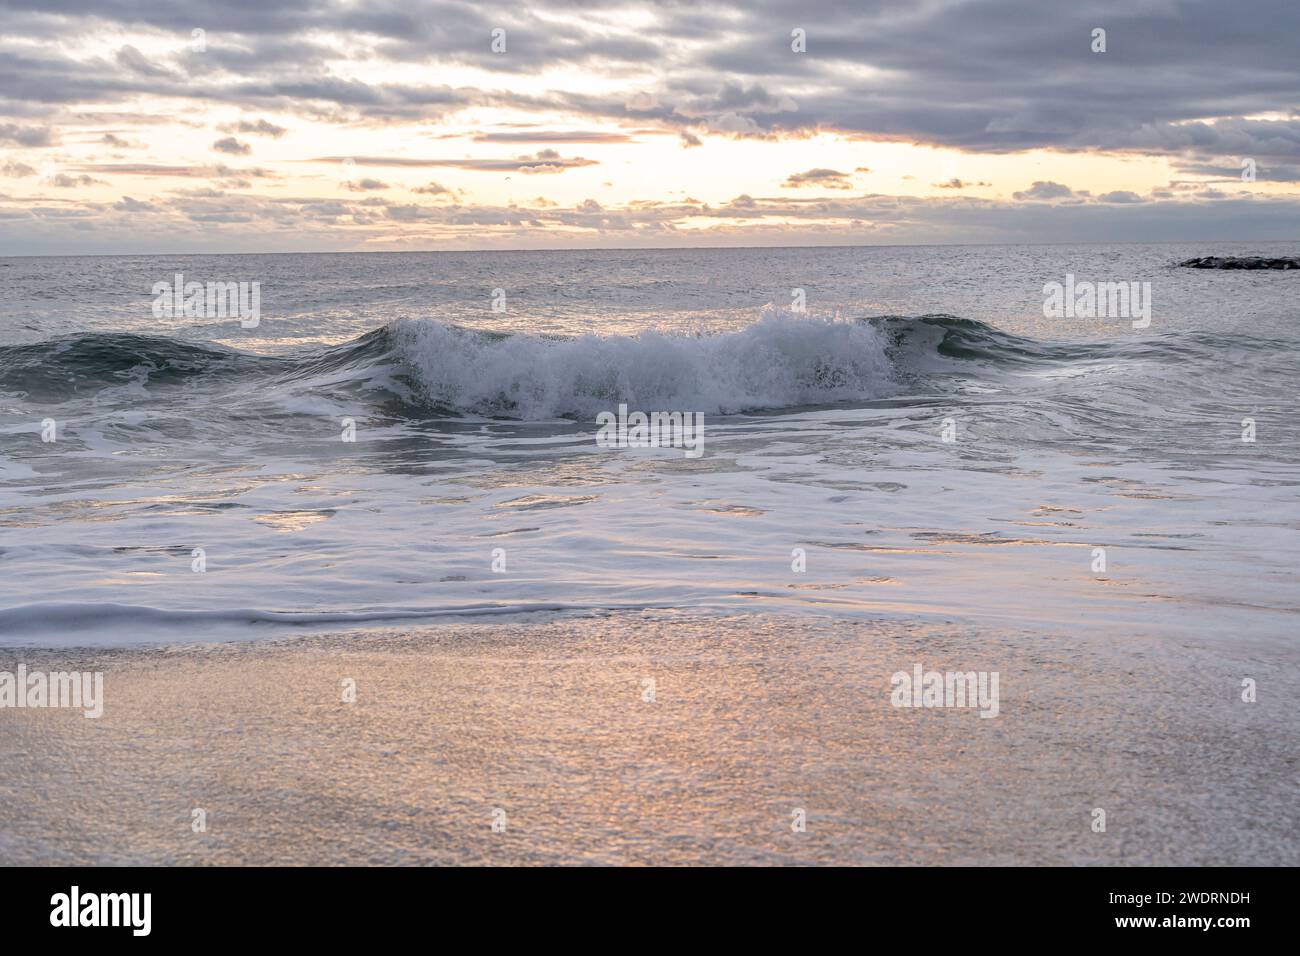 Atlantic Ocean waves crashing ashore onto the beach Stock Photo